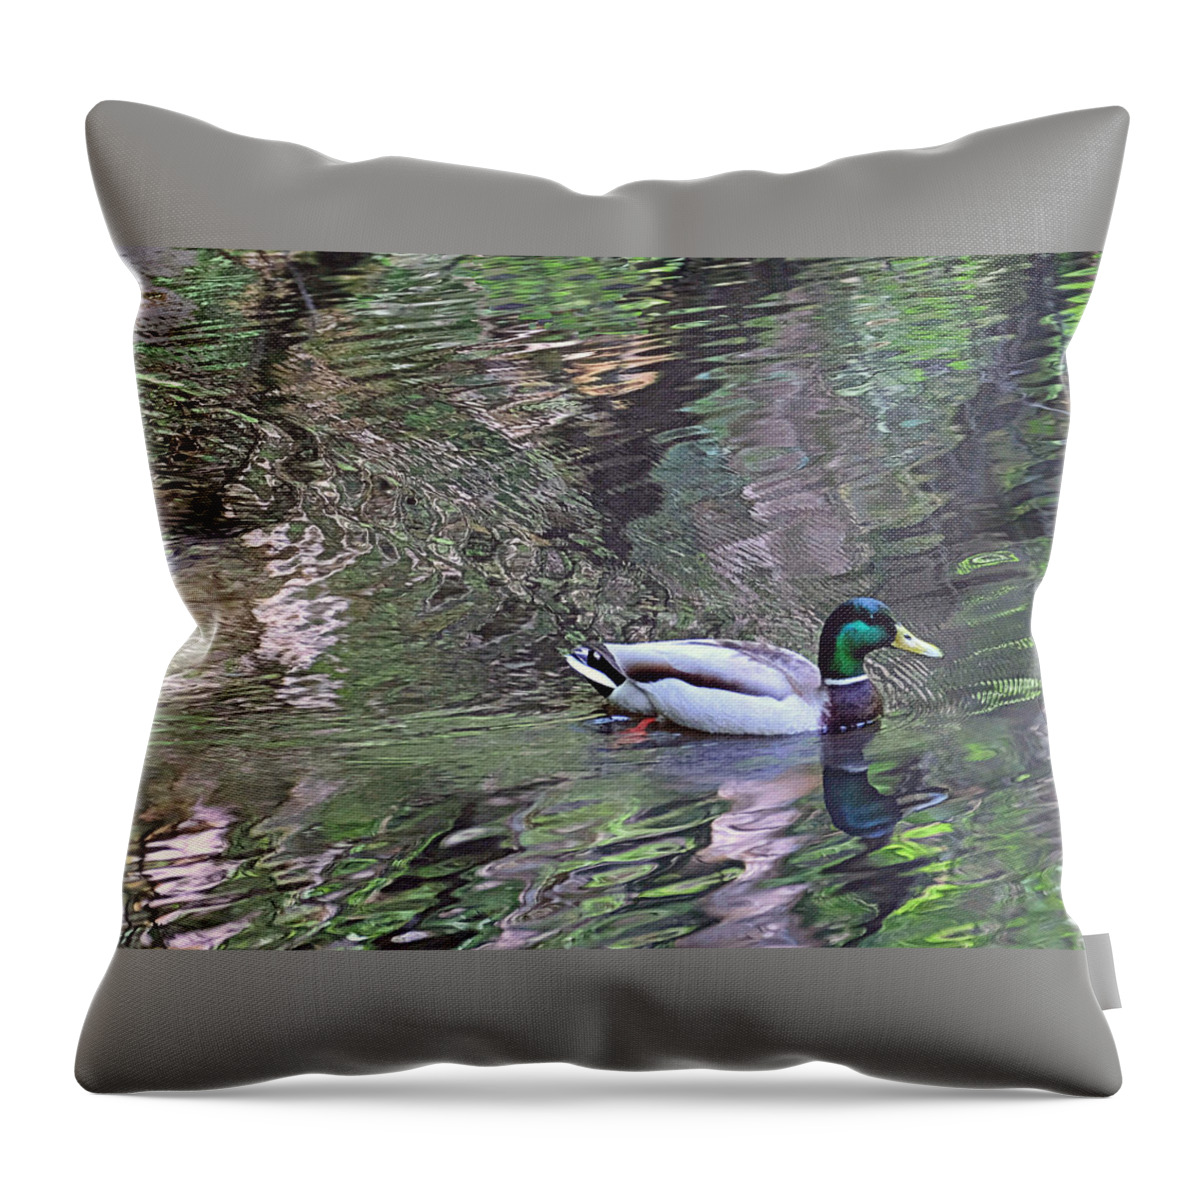 Mallard Throw Pillow featuring the photograph Duck Patterns by Suzy Piatt